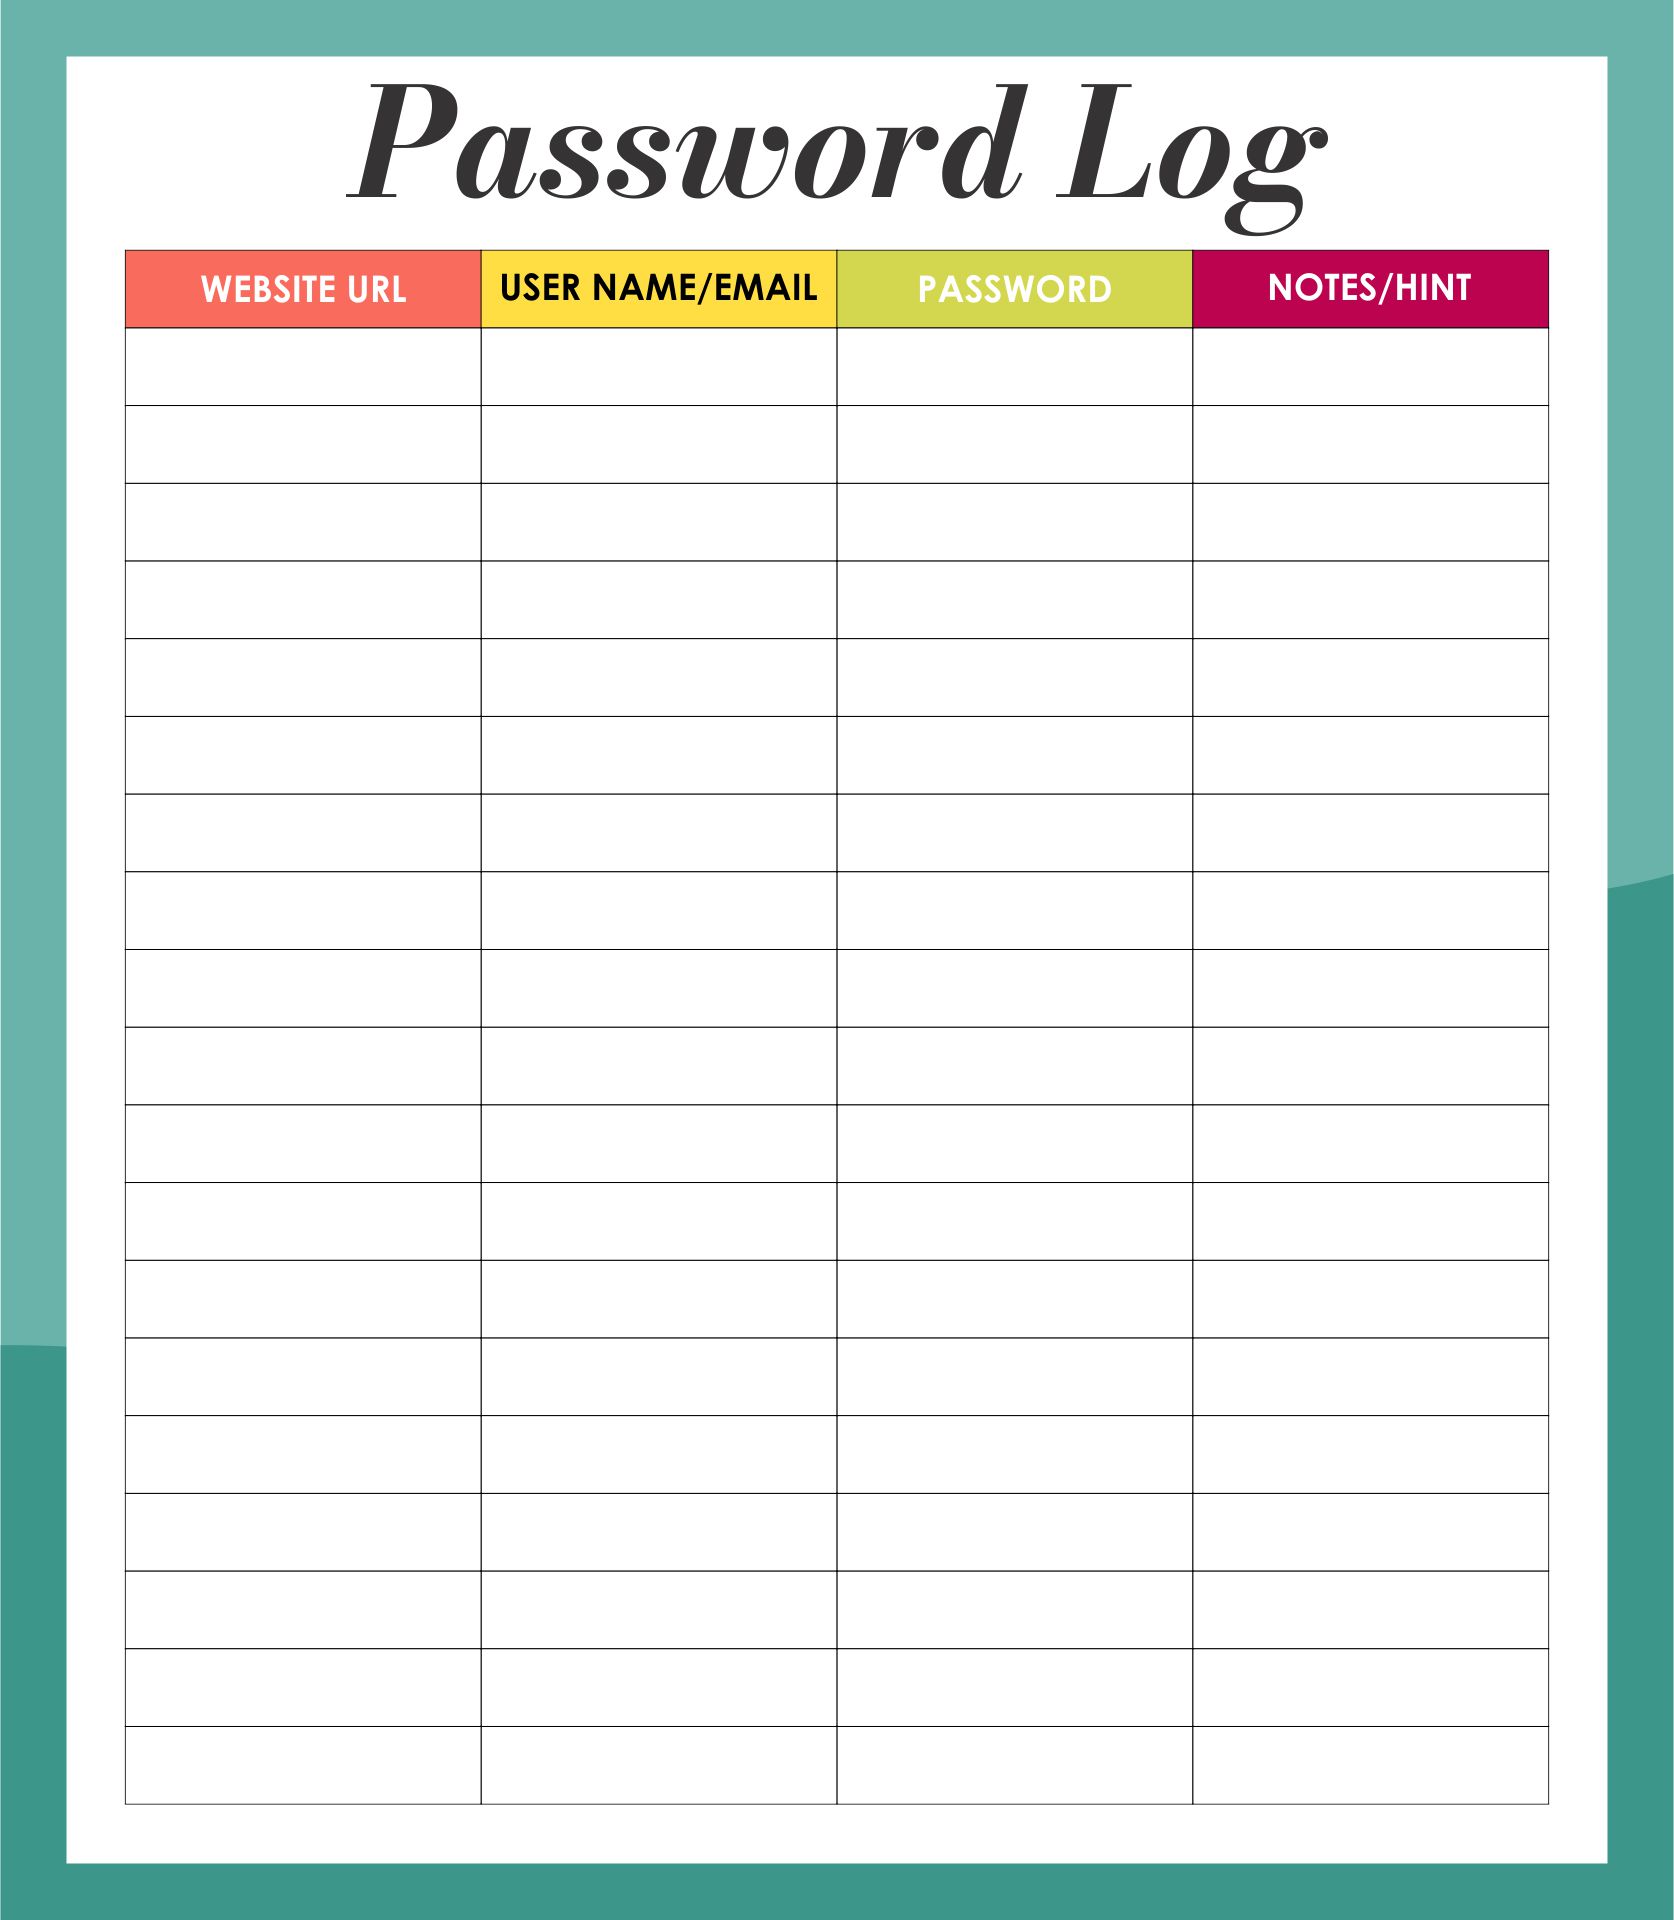 Username & Password Log Printable